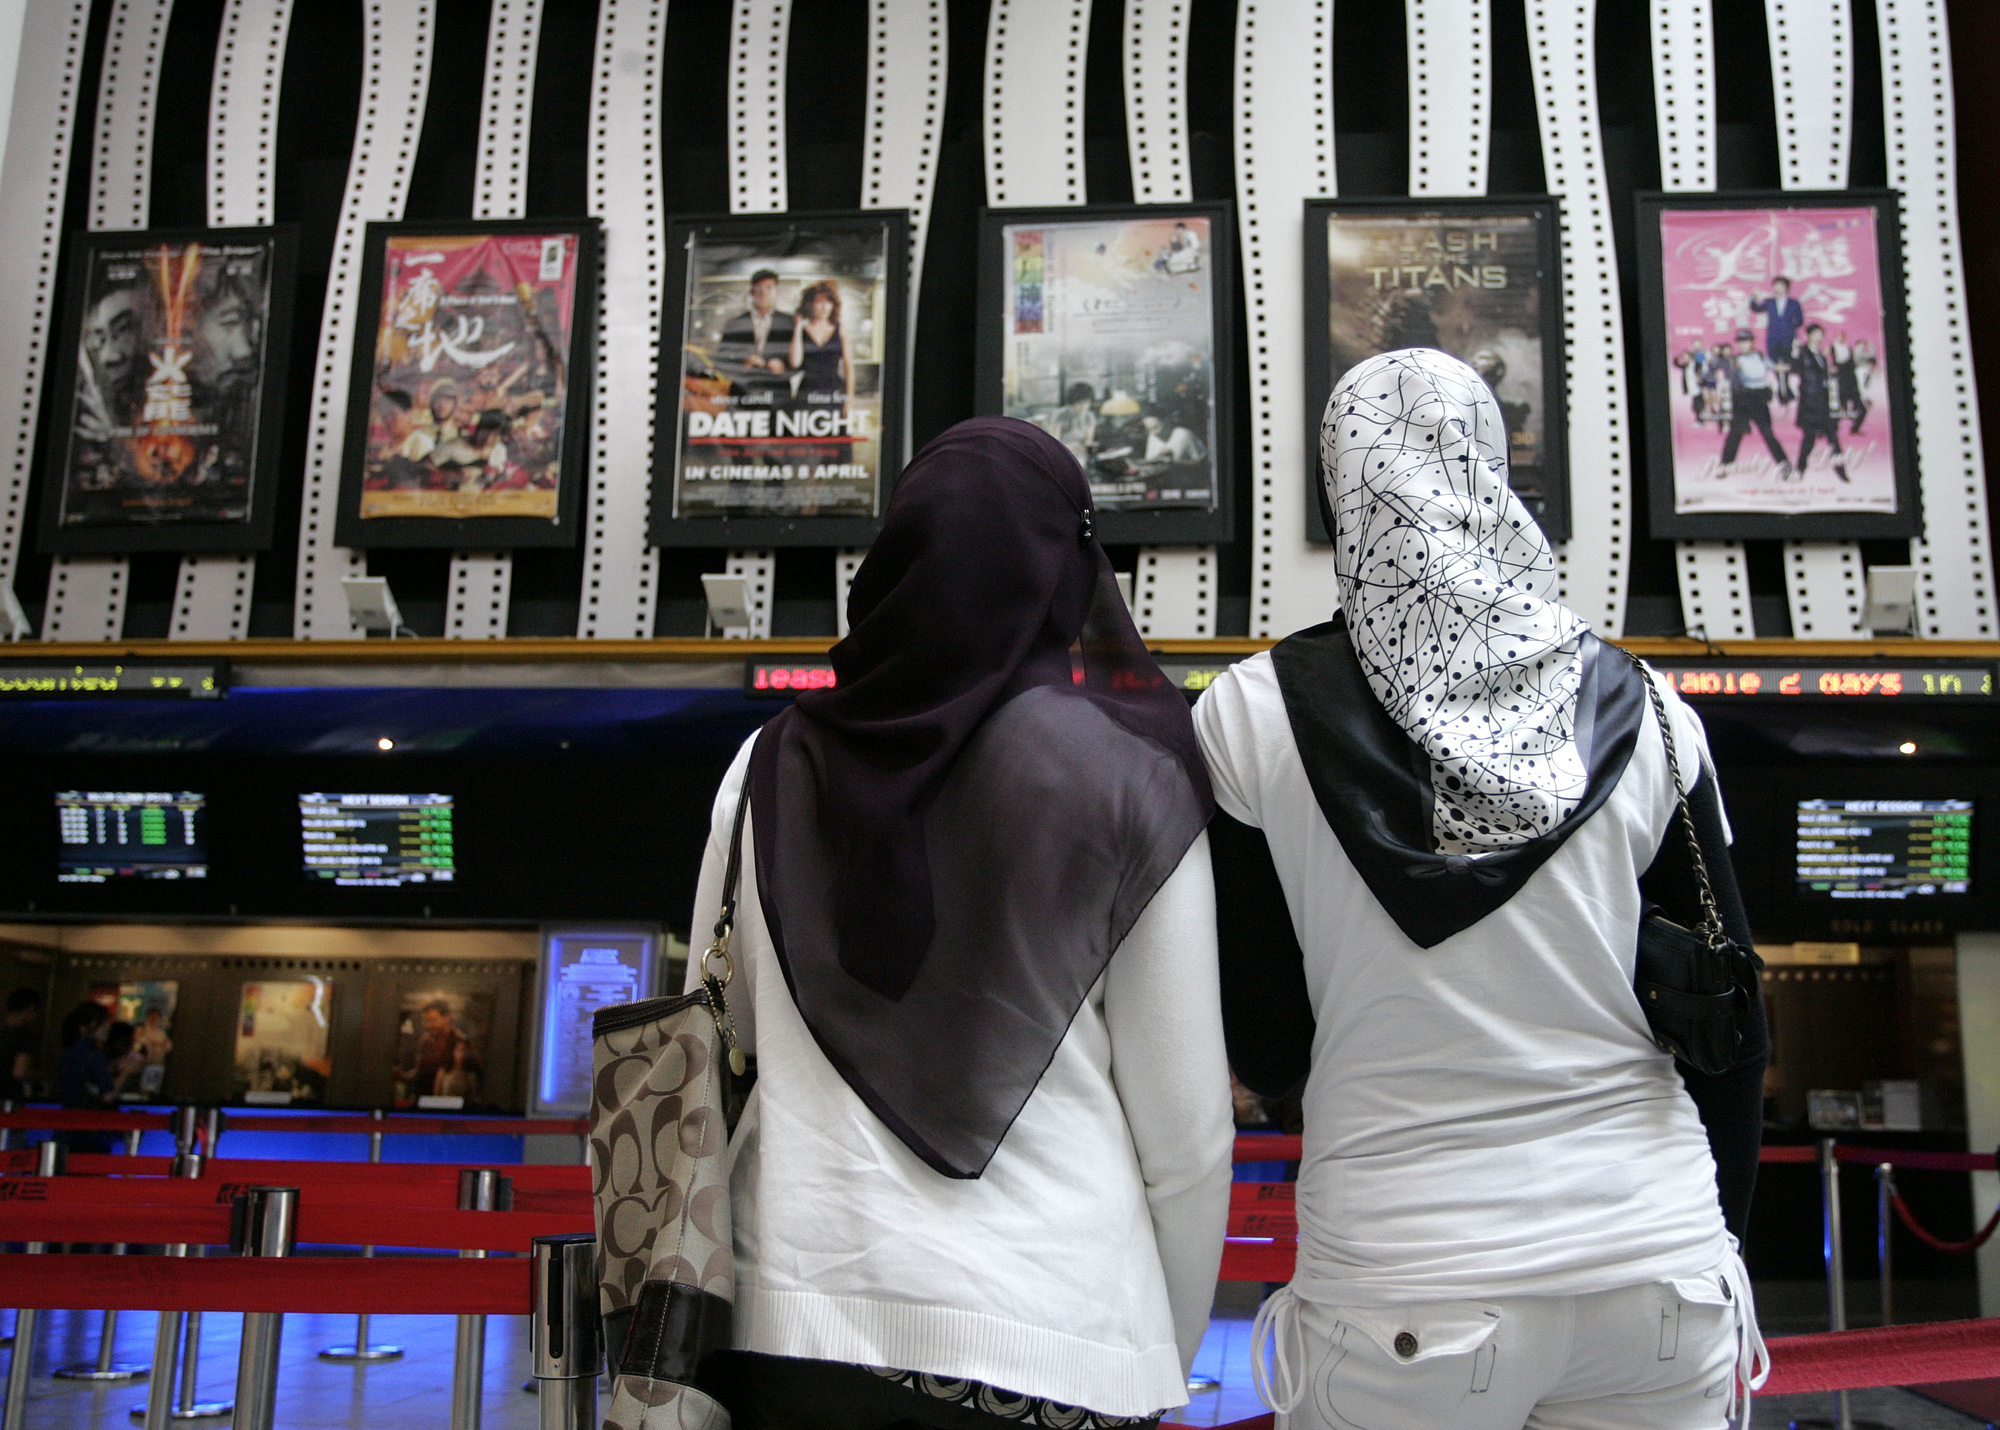 Två kvinnor tittar på affischer för den första gayrelaterade filmen någonsin i Malaysia, 2010.